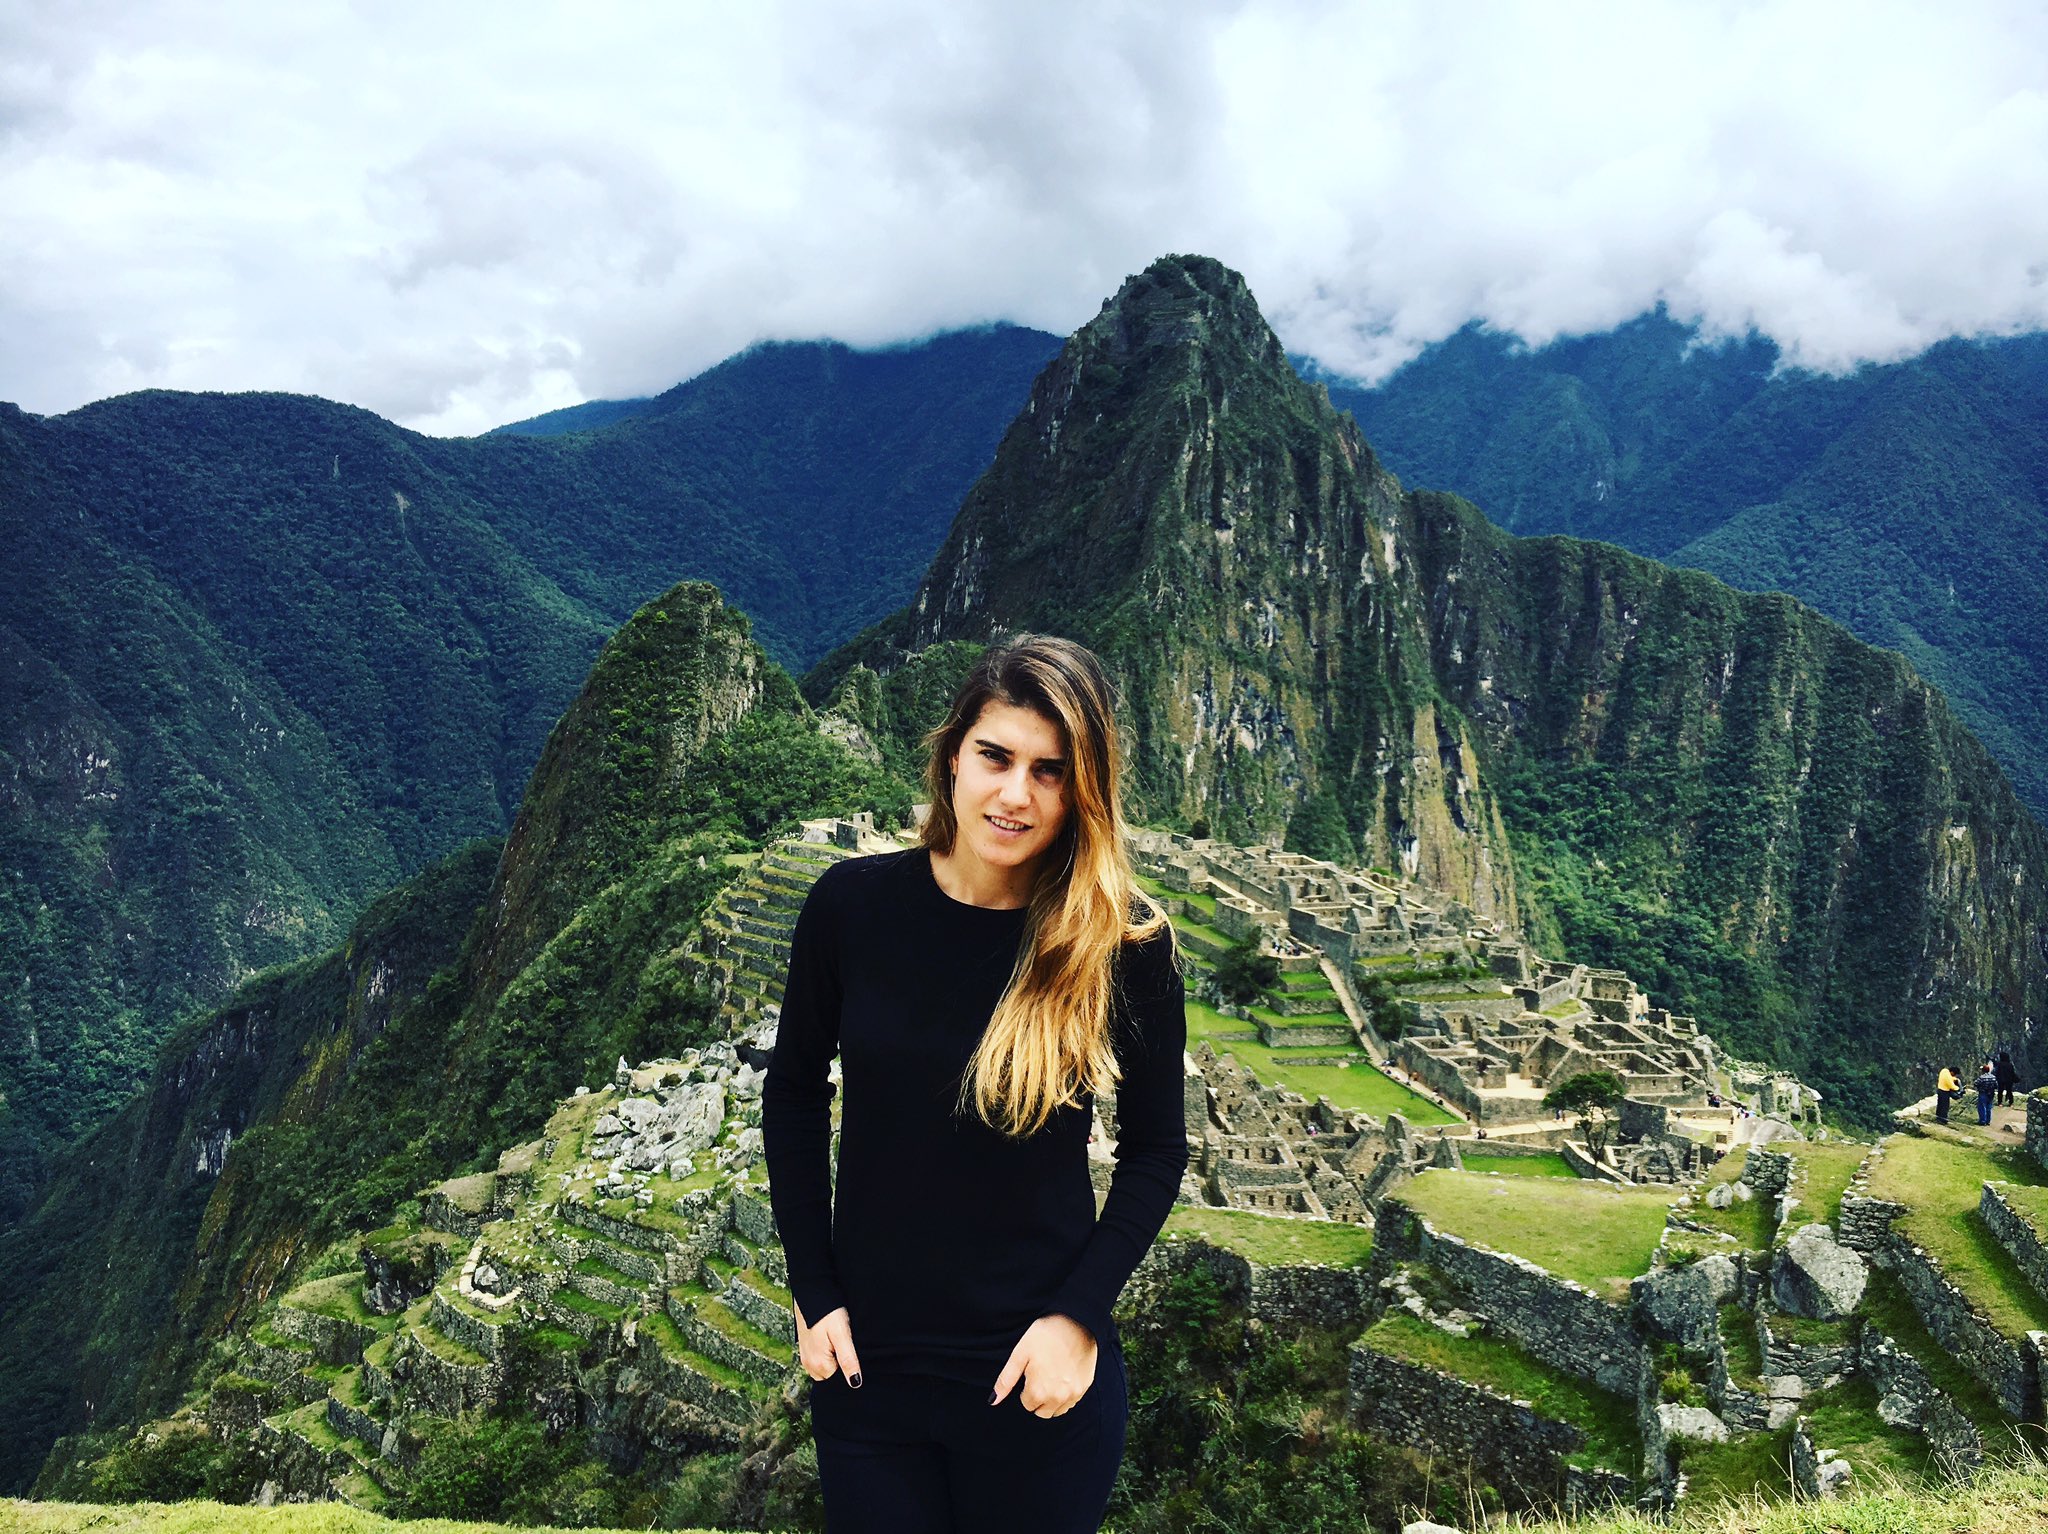 Сорана Кърстя избра да посети Мачу Пикчу (снимки)